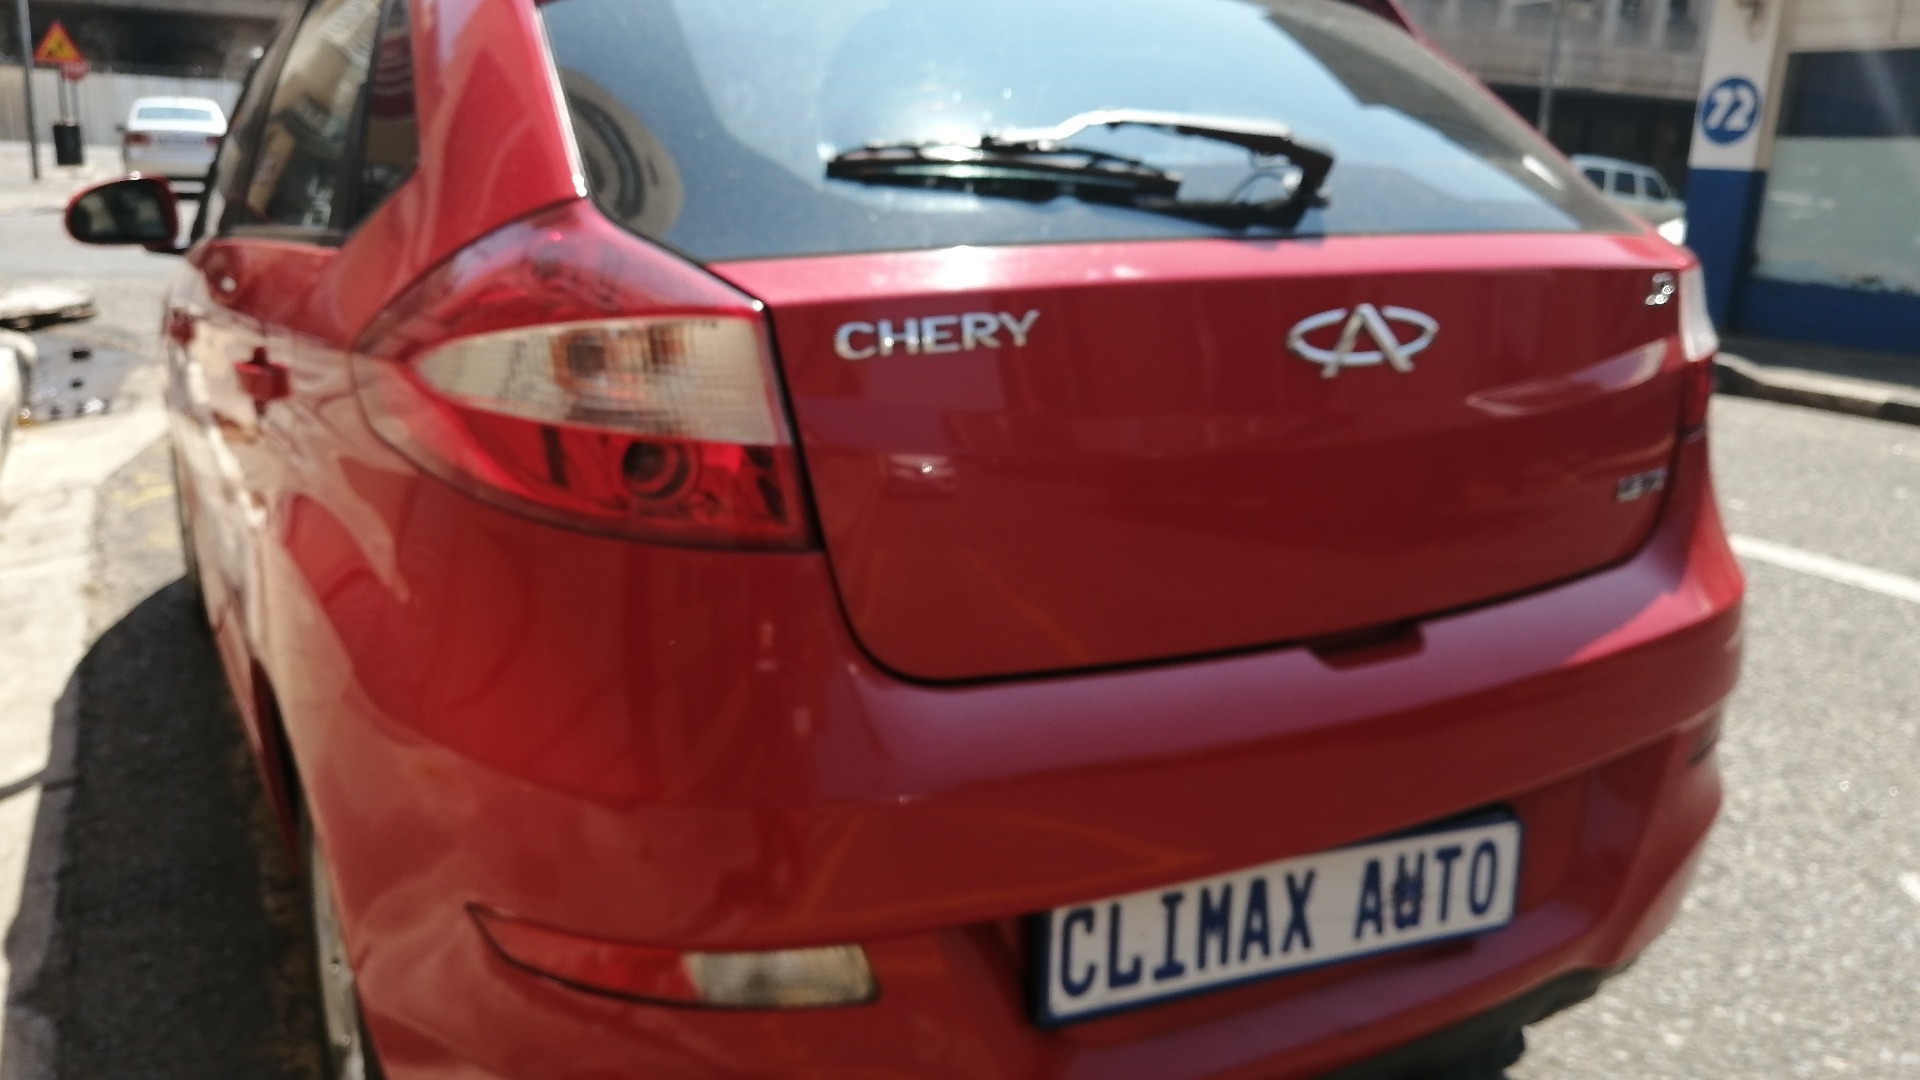 Chery J2 1 5 Tx For Sale In Gauteng Auto Mart